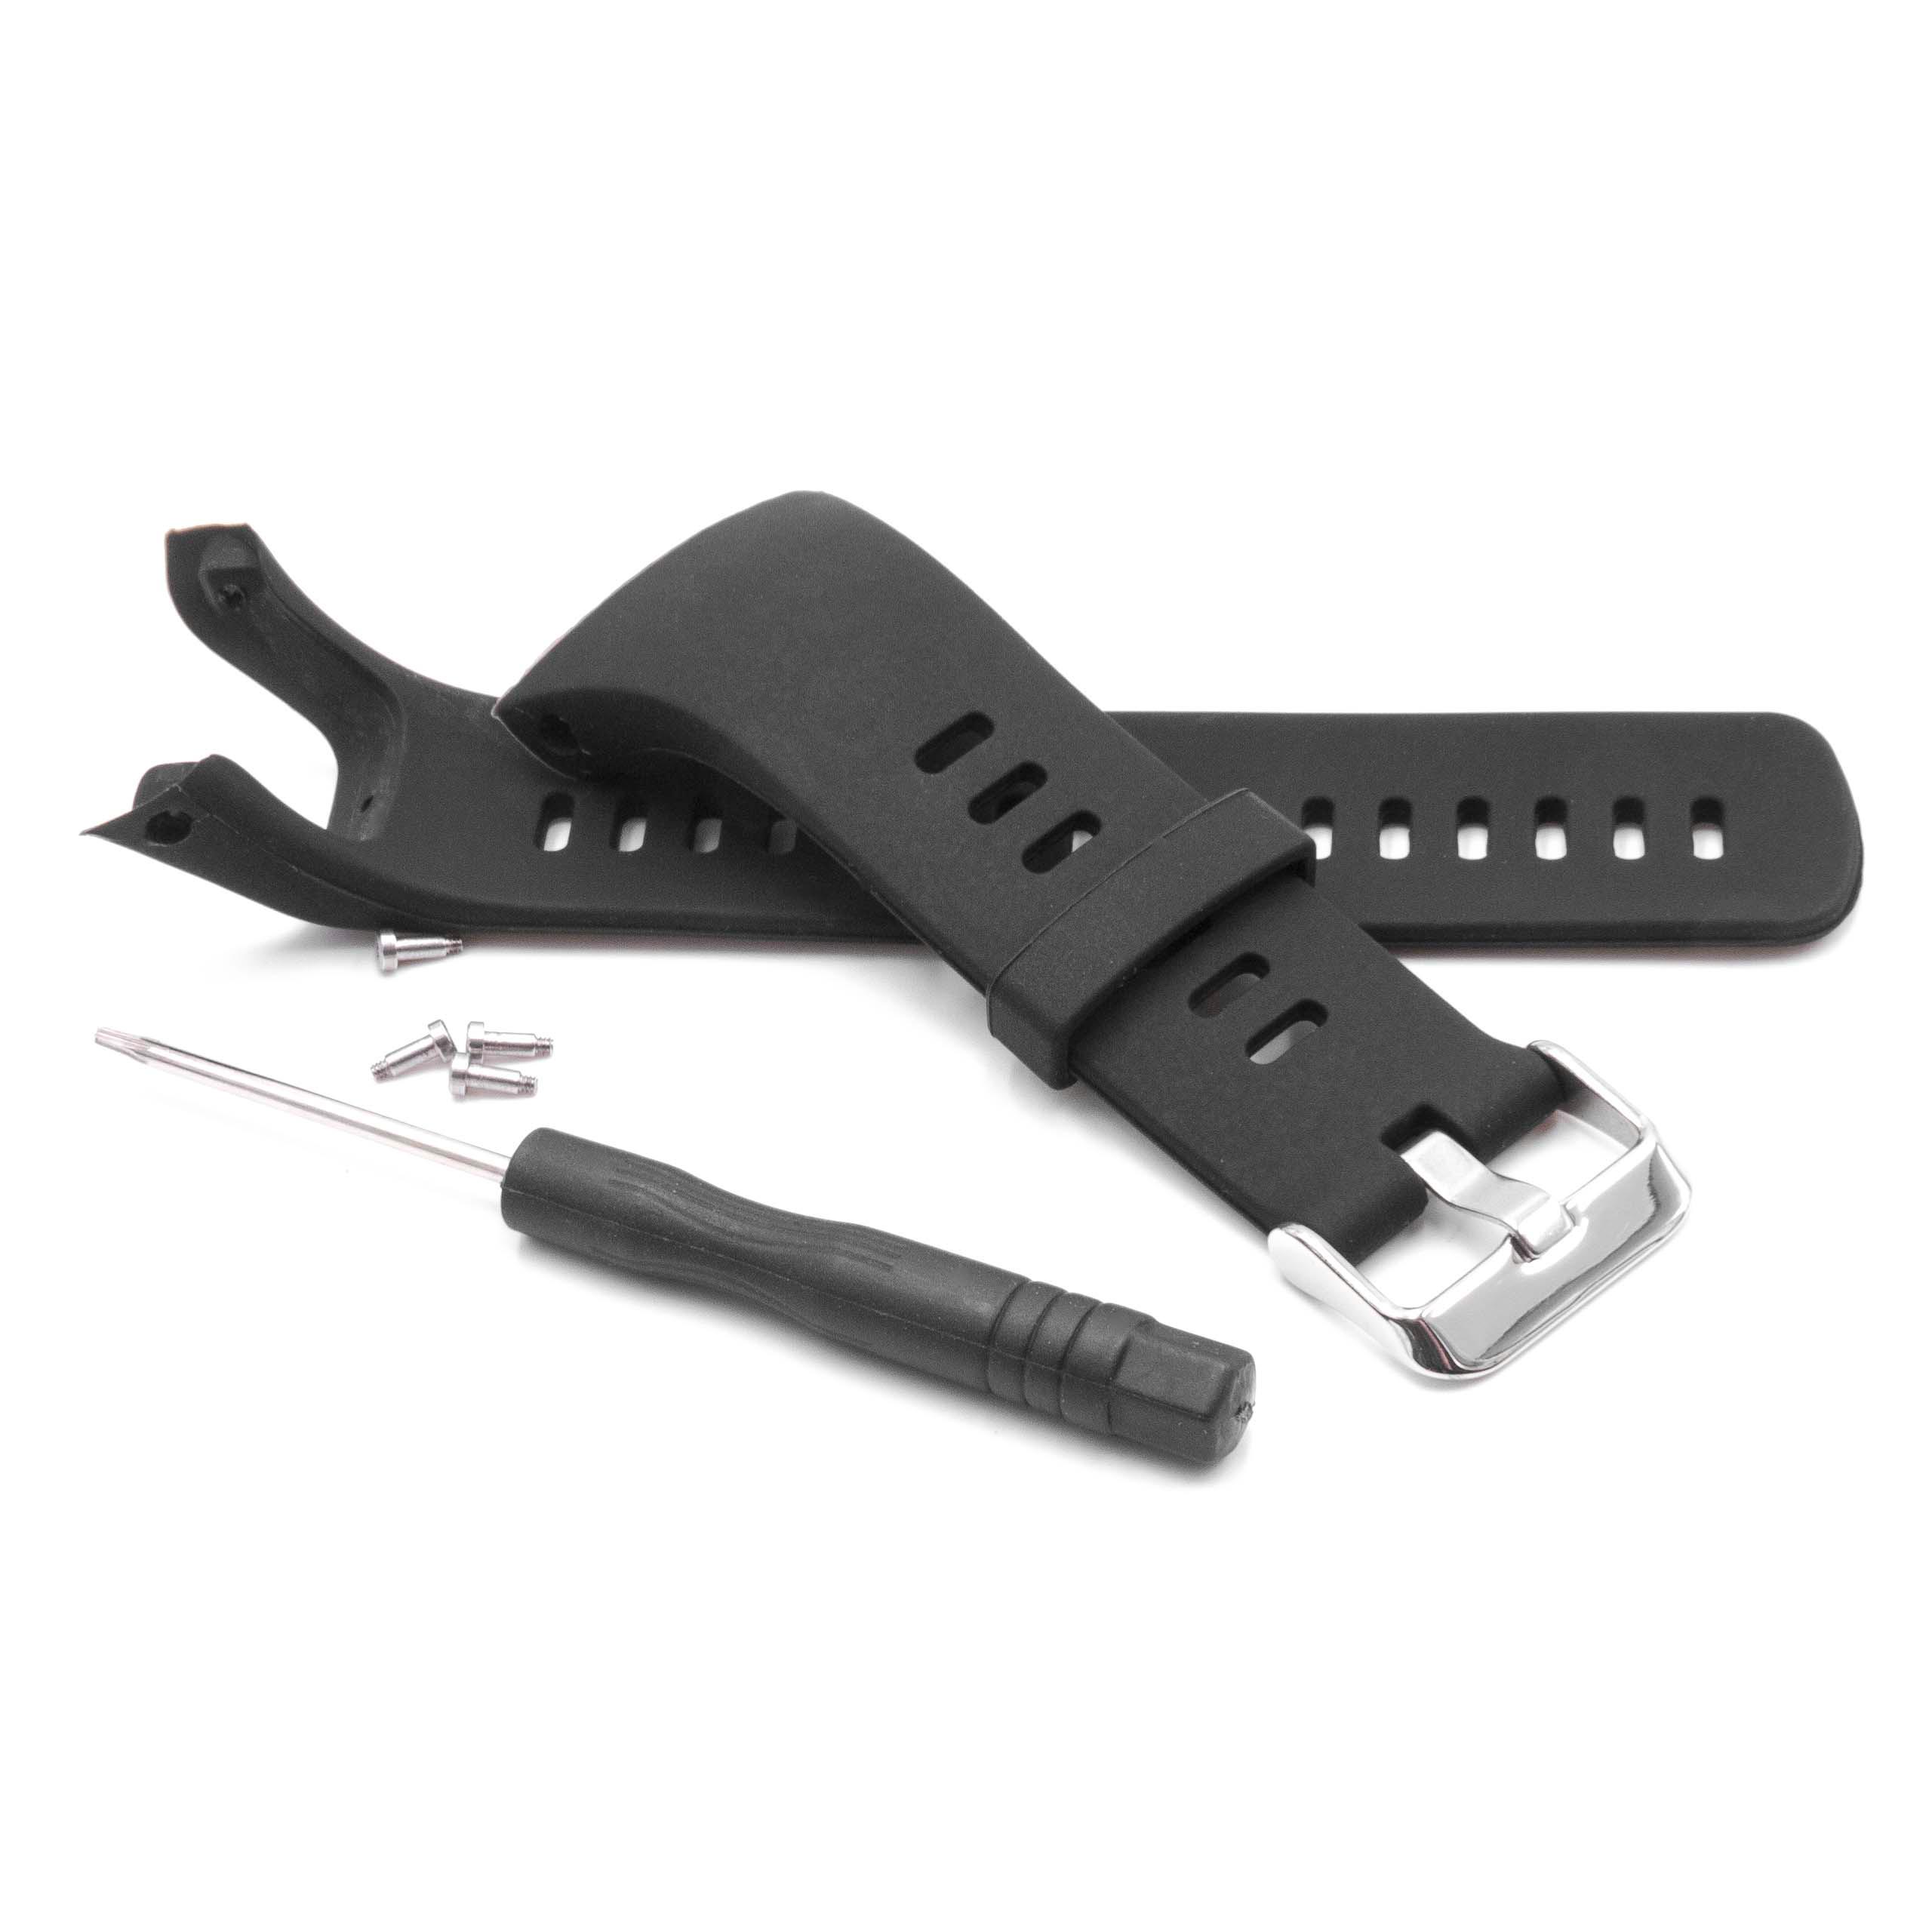 cinturino per Suunto Smartwatch - 12cm + 9 cm lunghezza, 21mm ampiezza, silicone, nero